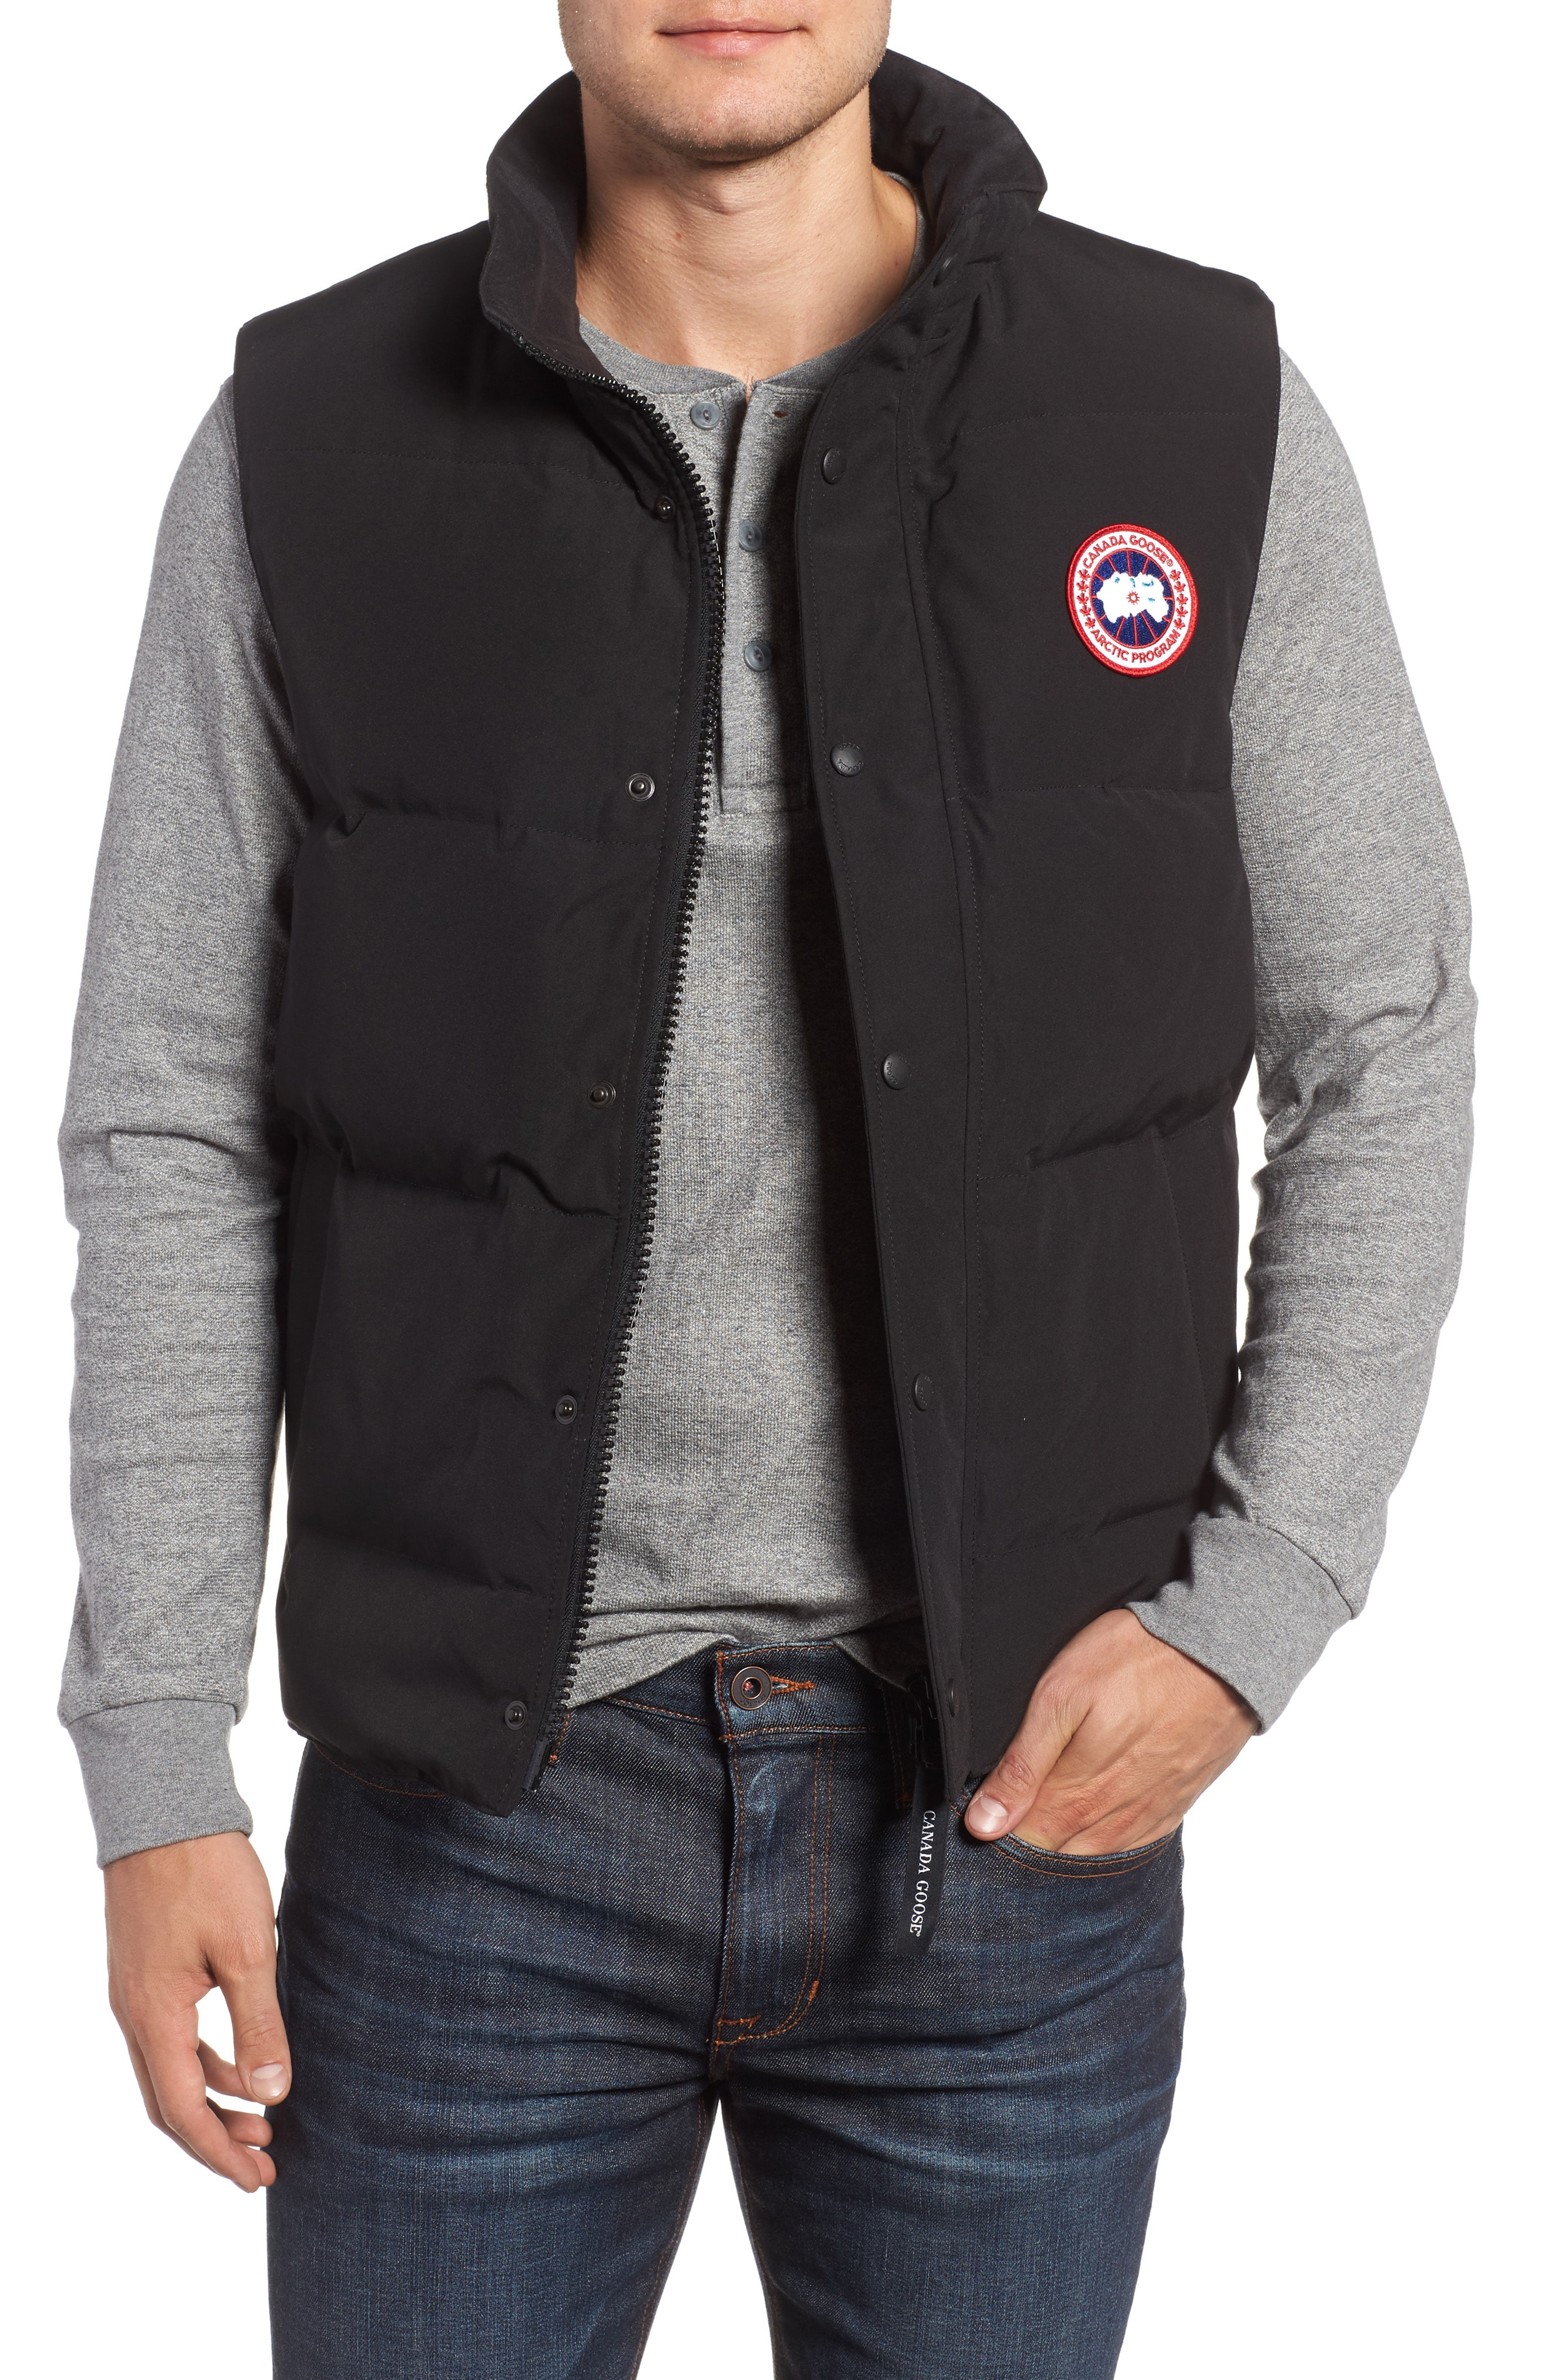 Men's Down Coats & Jackets | Nordstrom